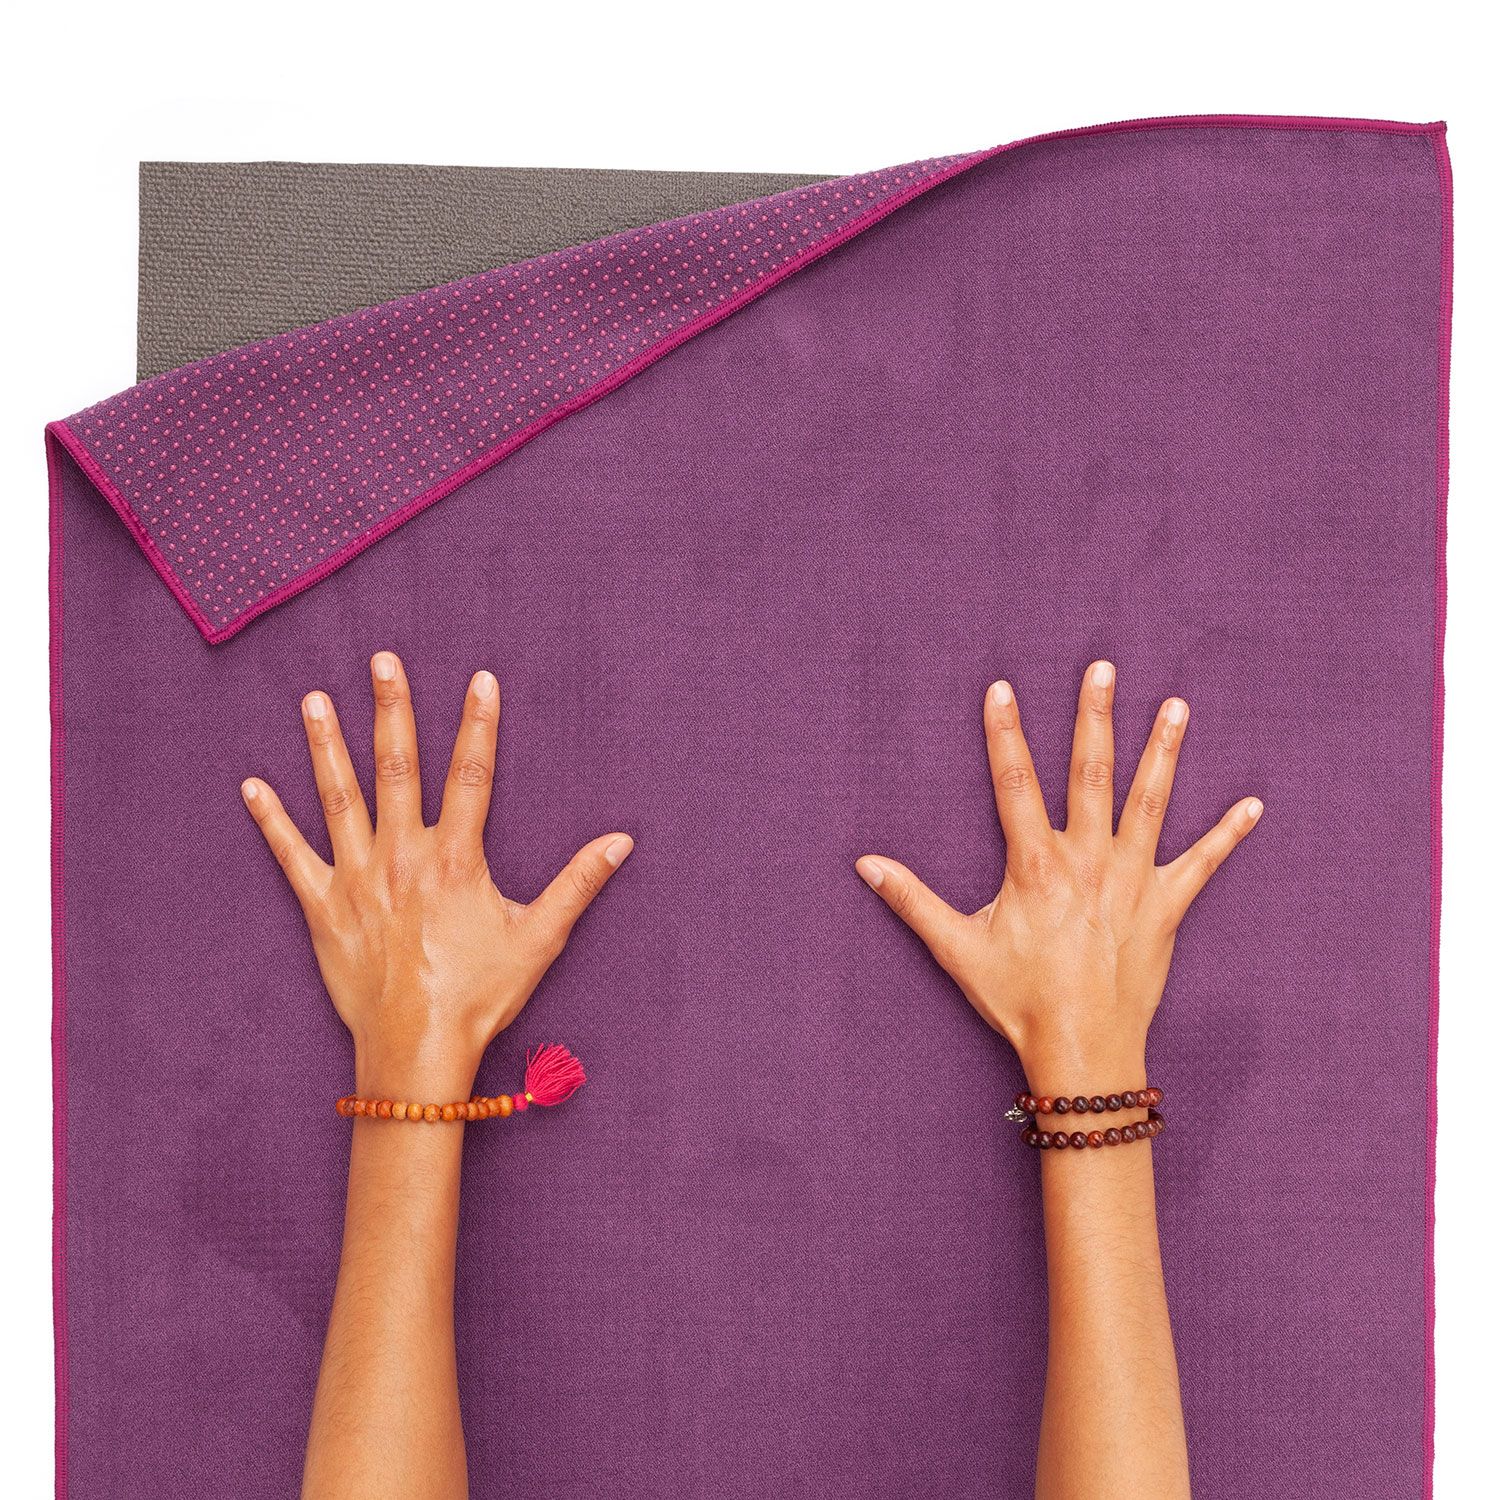 GRIP² Yoga Towel zweifarbig: aubergine mit Antirutschnoppen lila, 905-AL